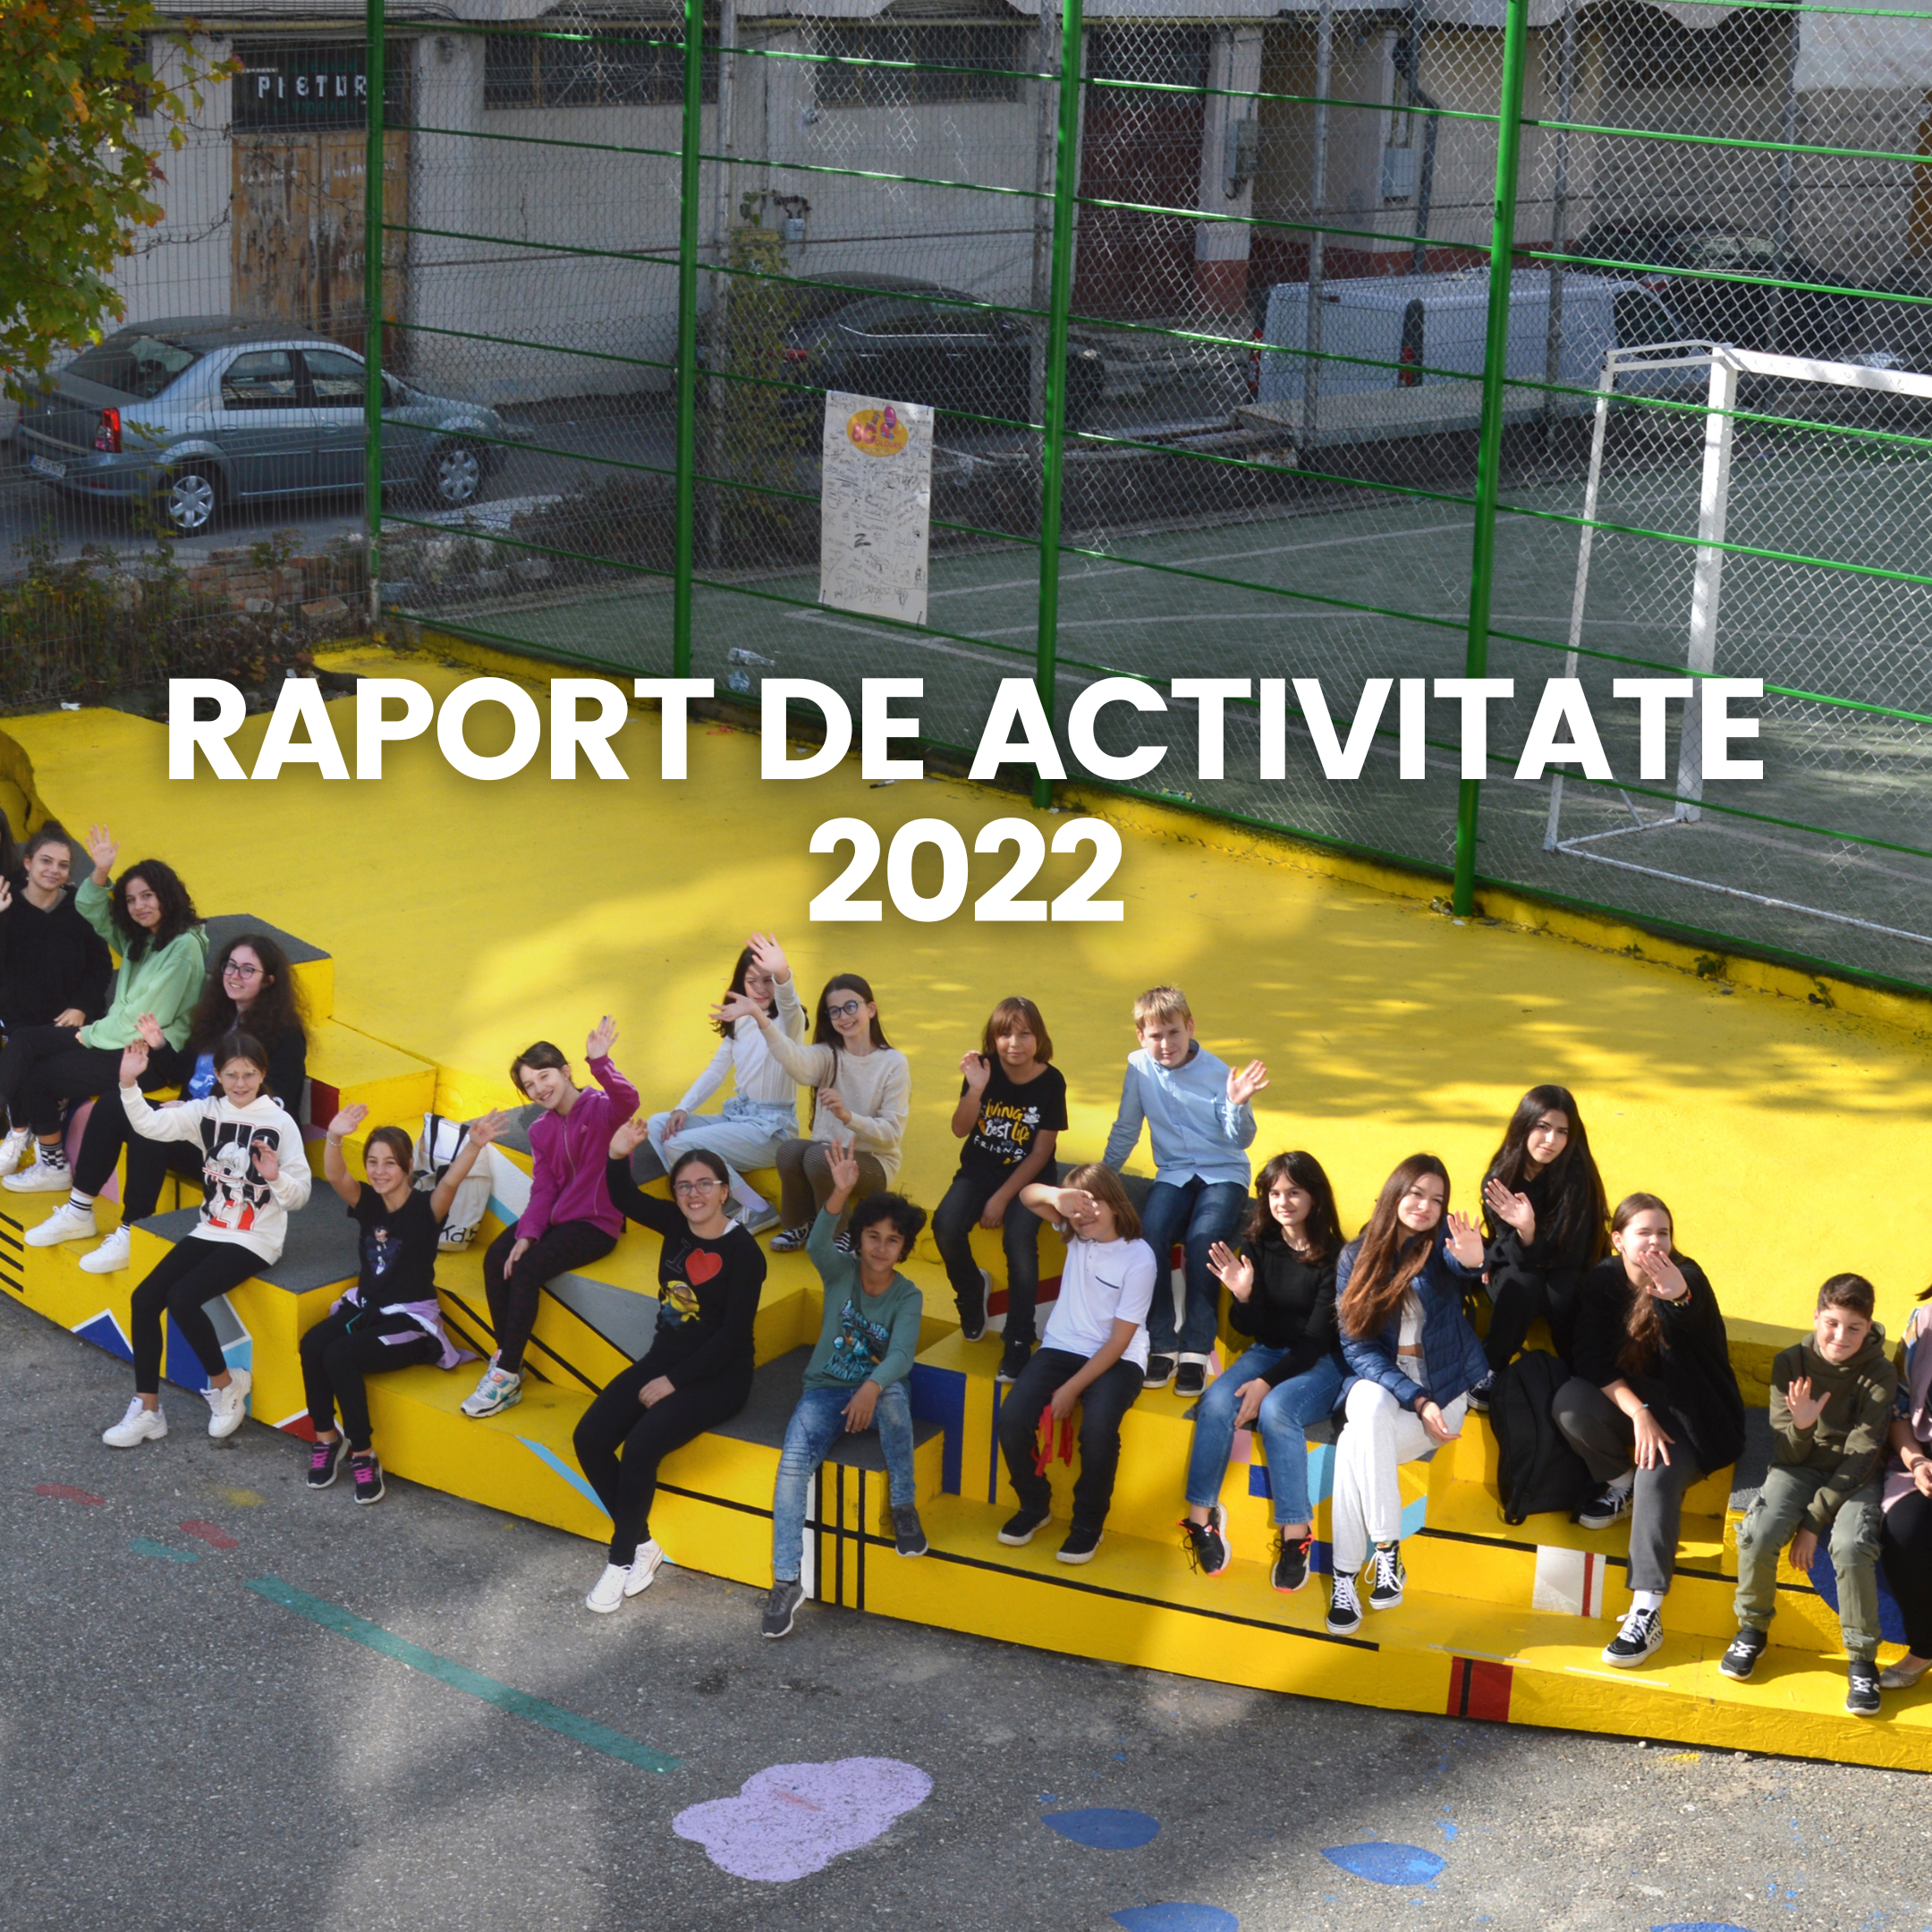 Raport de activitate 2022: anul în care am sărbătorit 10 ani de activitate